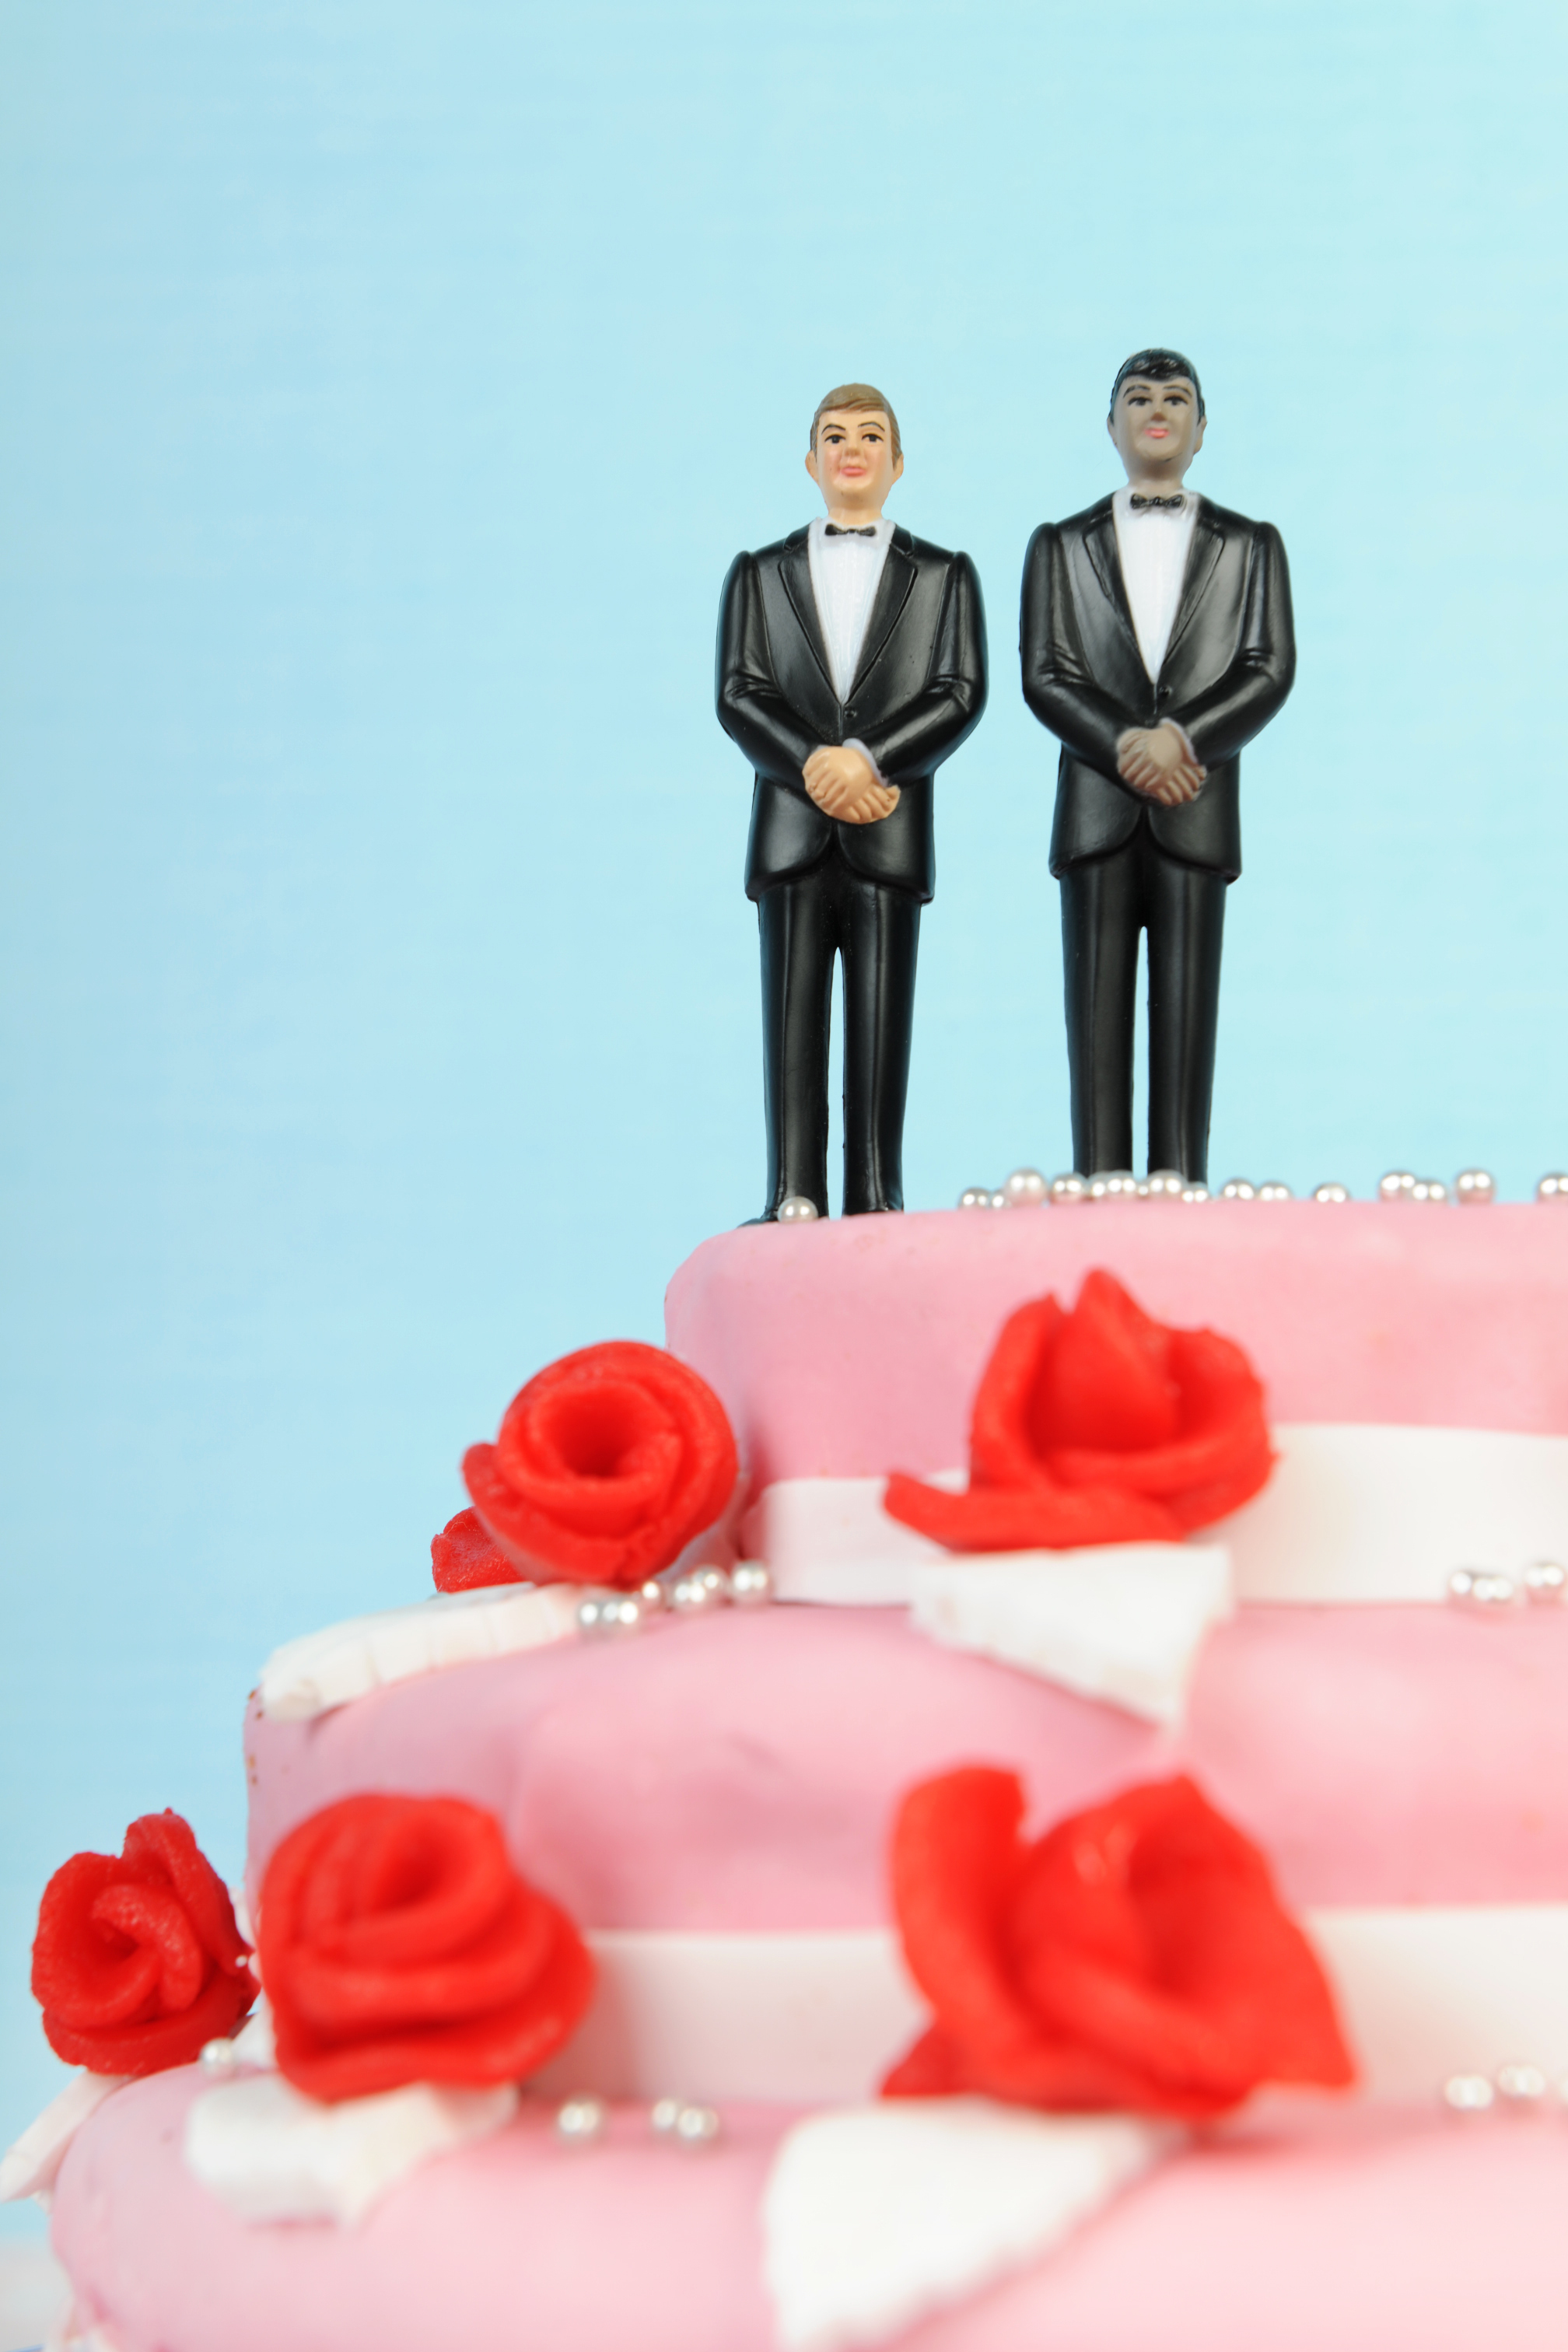 Wedding cake with groom figures on top.